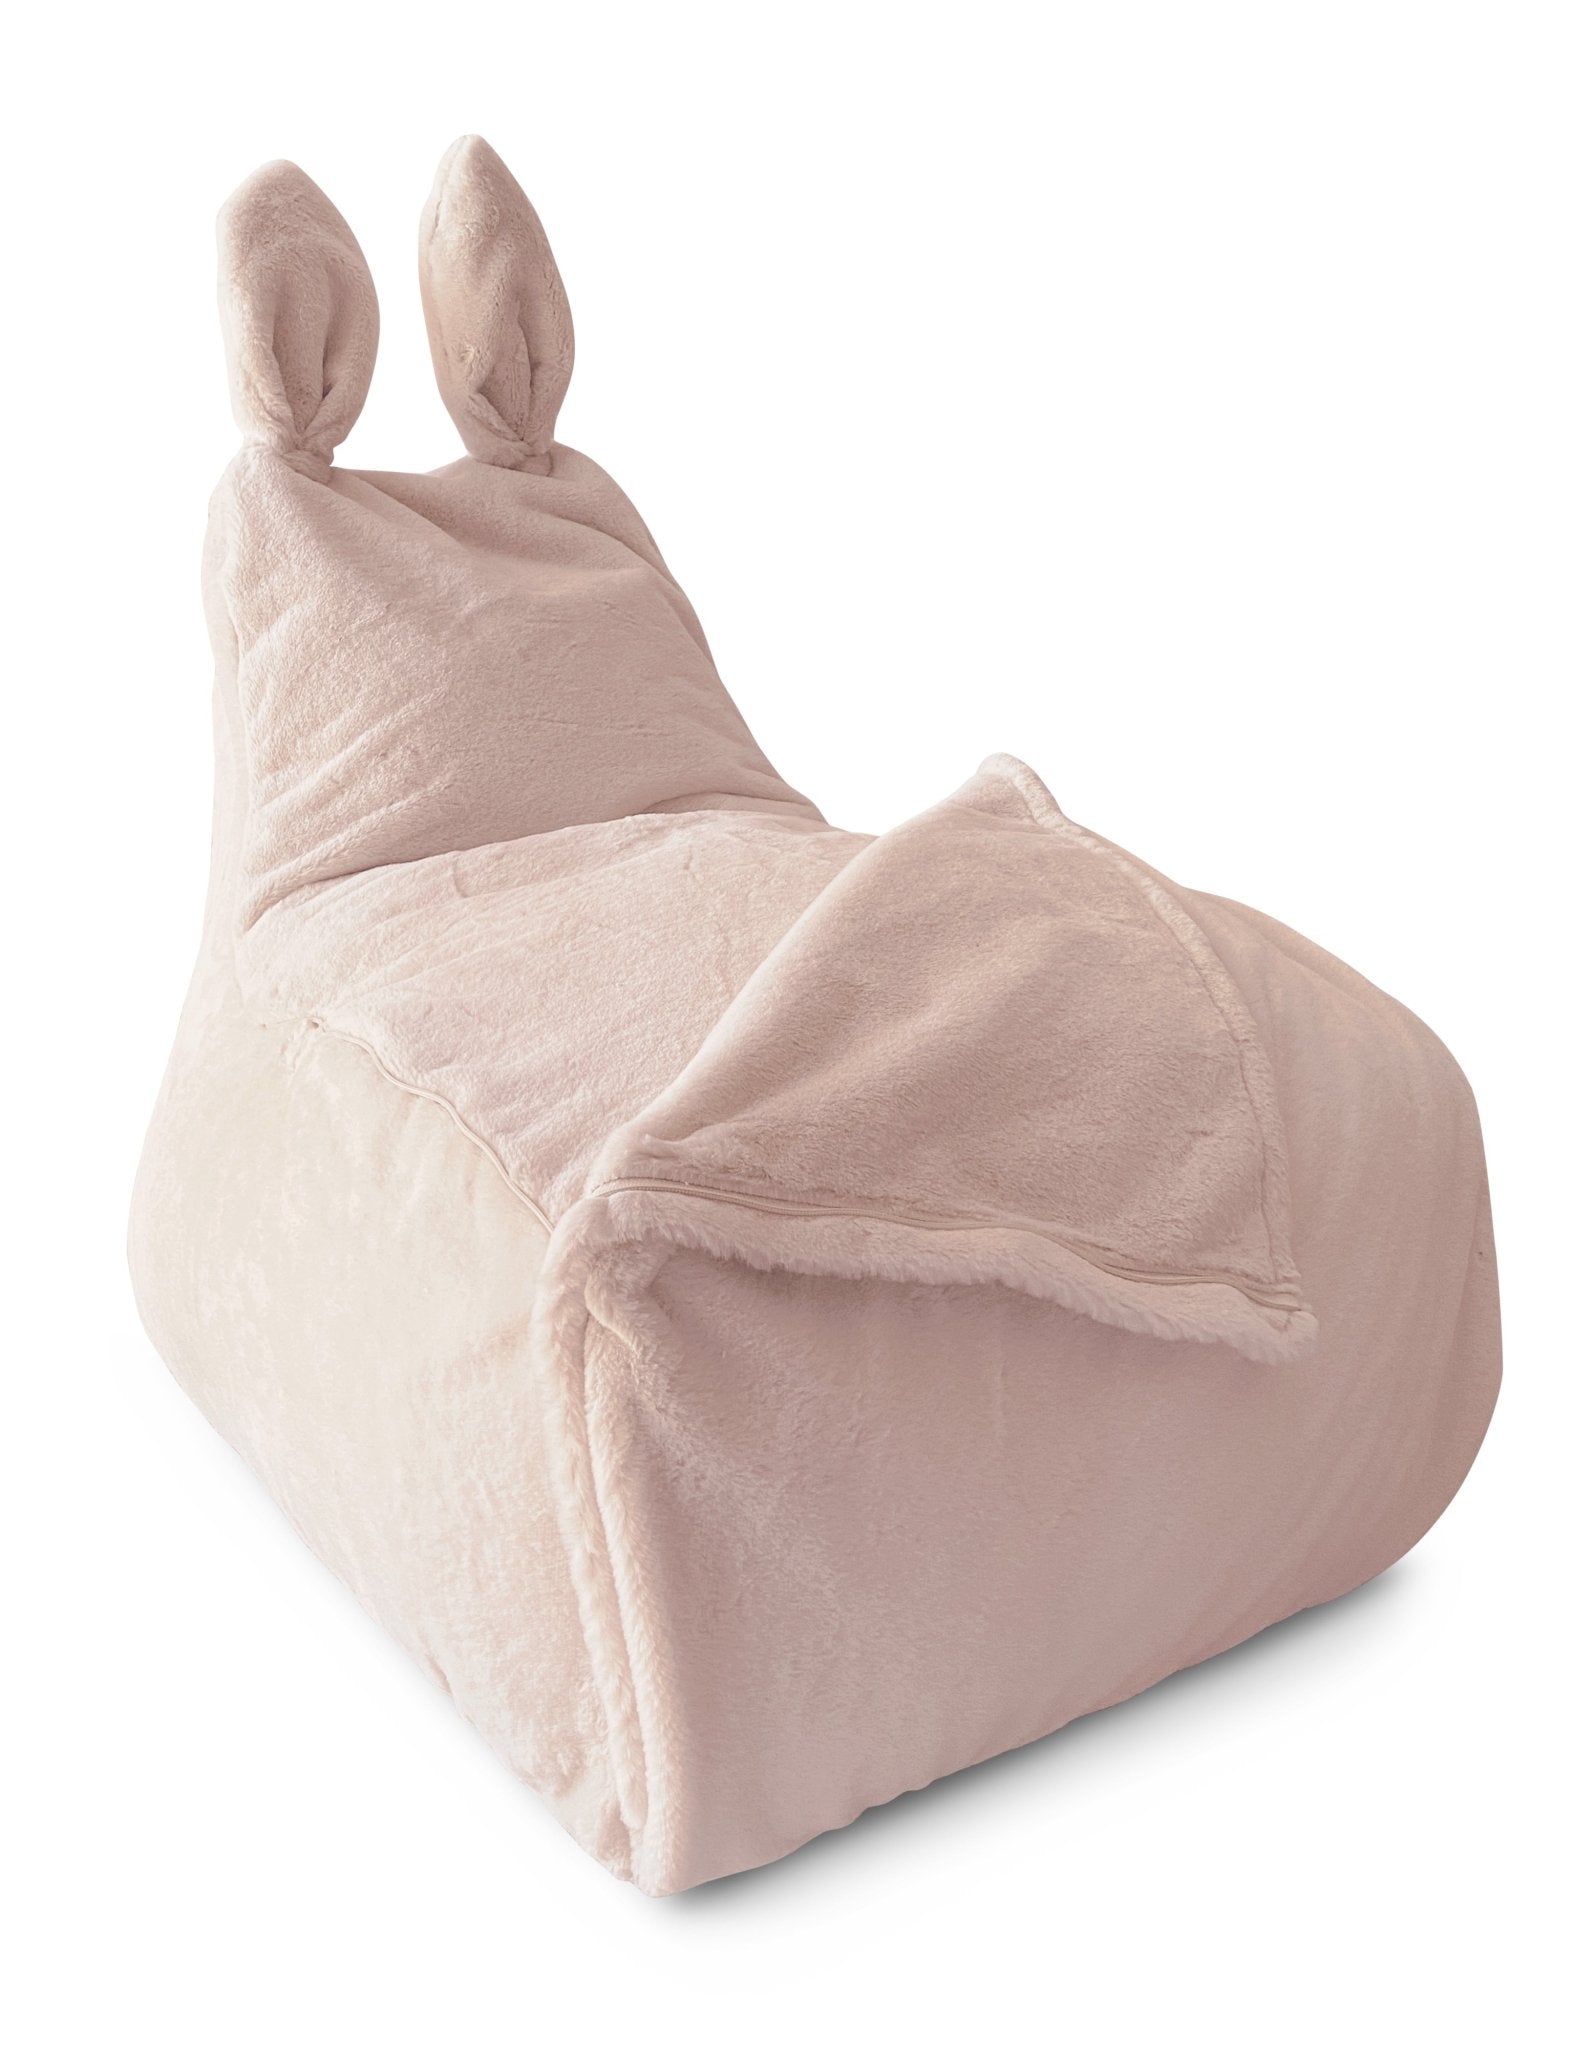 BUNNY L Bean Bag, Fur, Light Pink - Scandinavian Stories by Marton